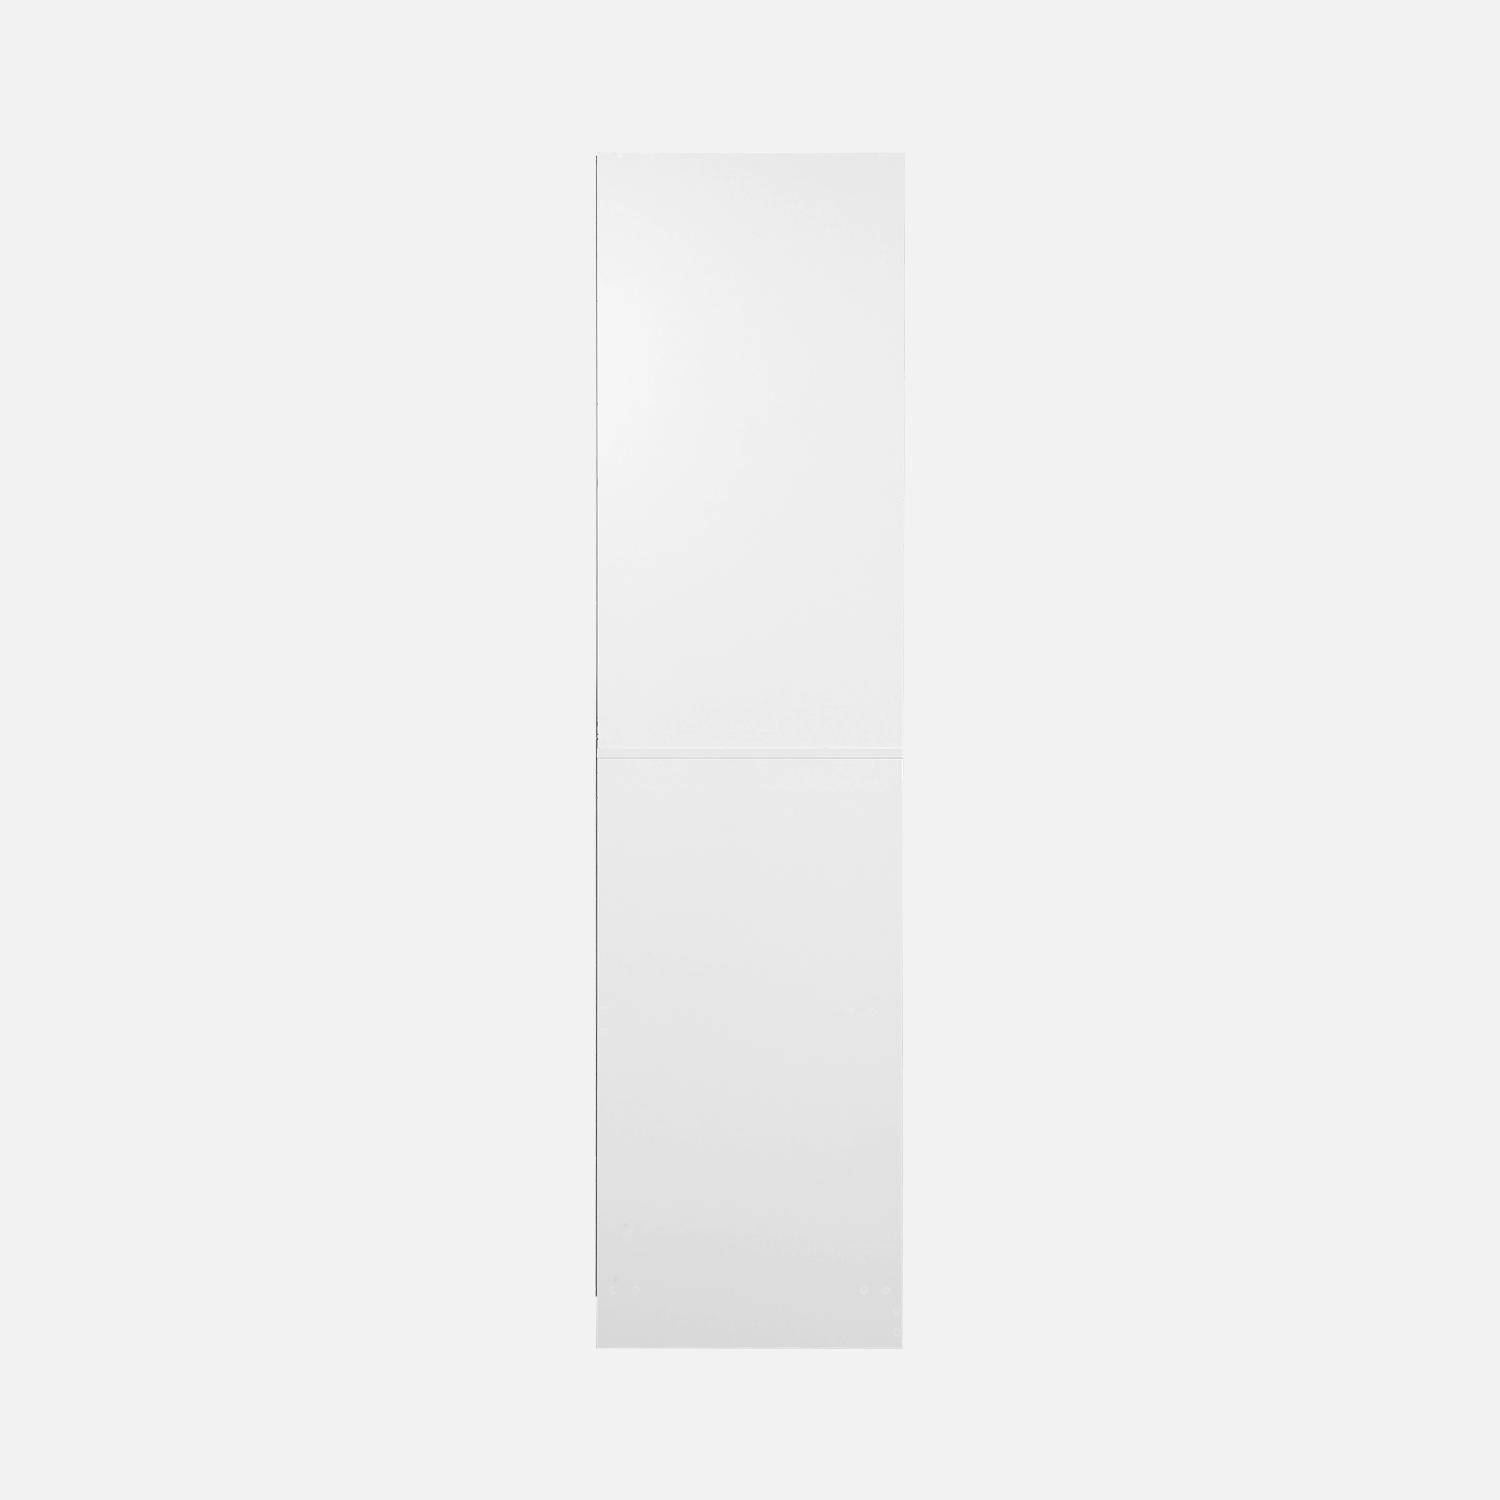 Kleerkastmodule met kleerkast en broekenhanger, wit, gelamineerde panelen,sweeek,Photo6